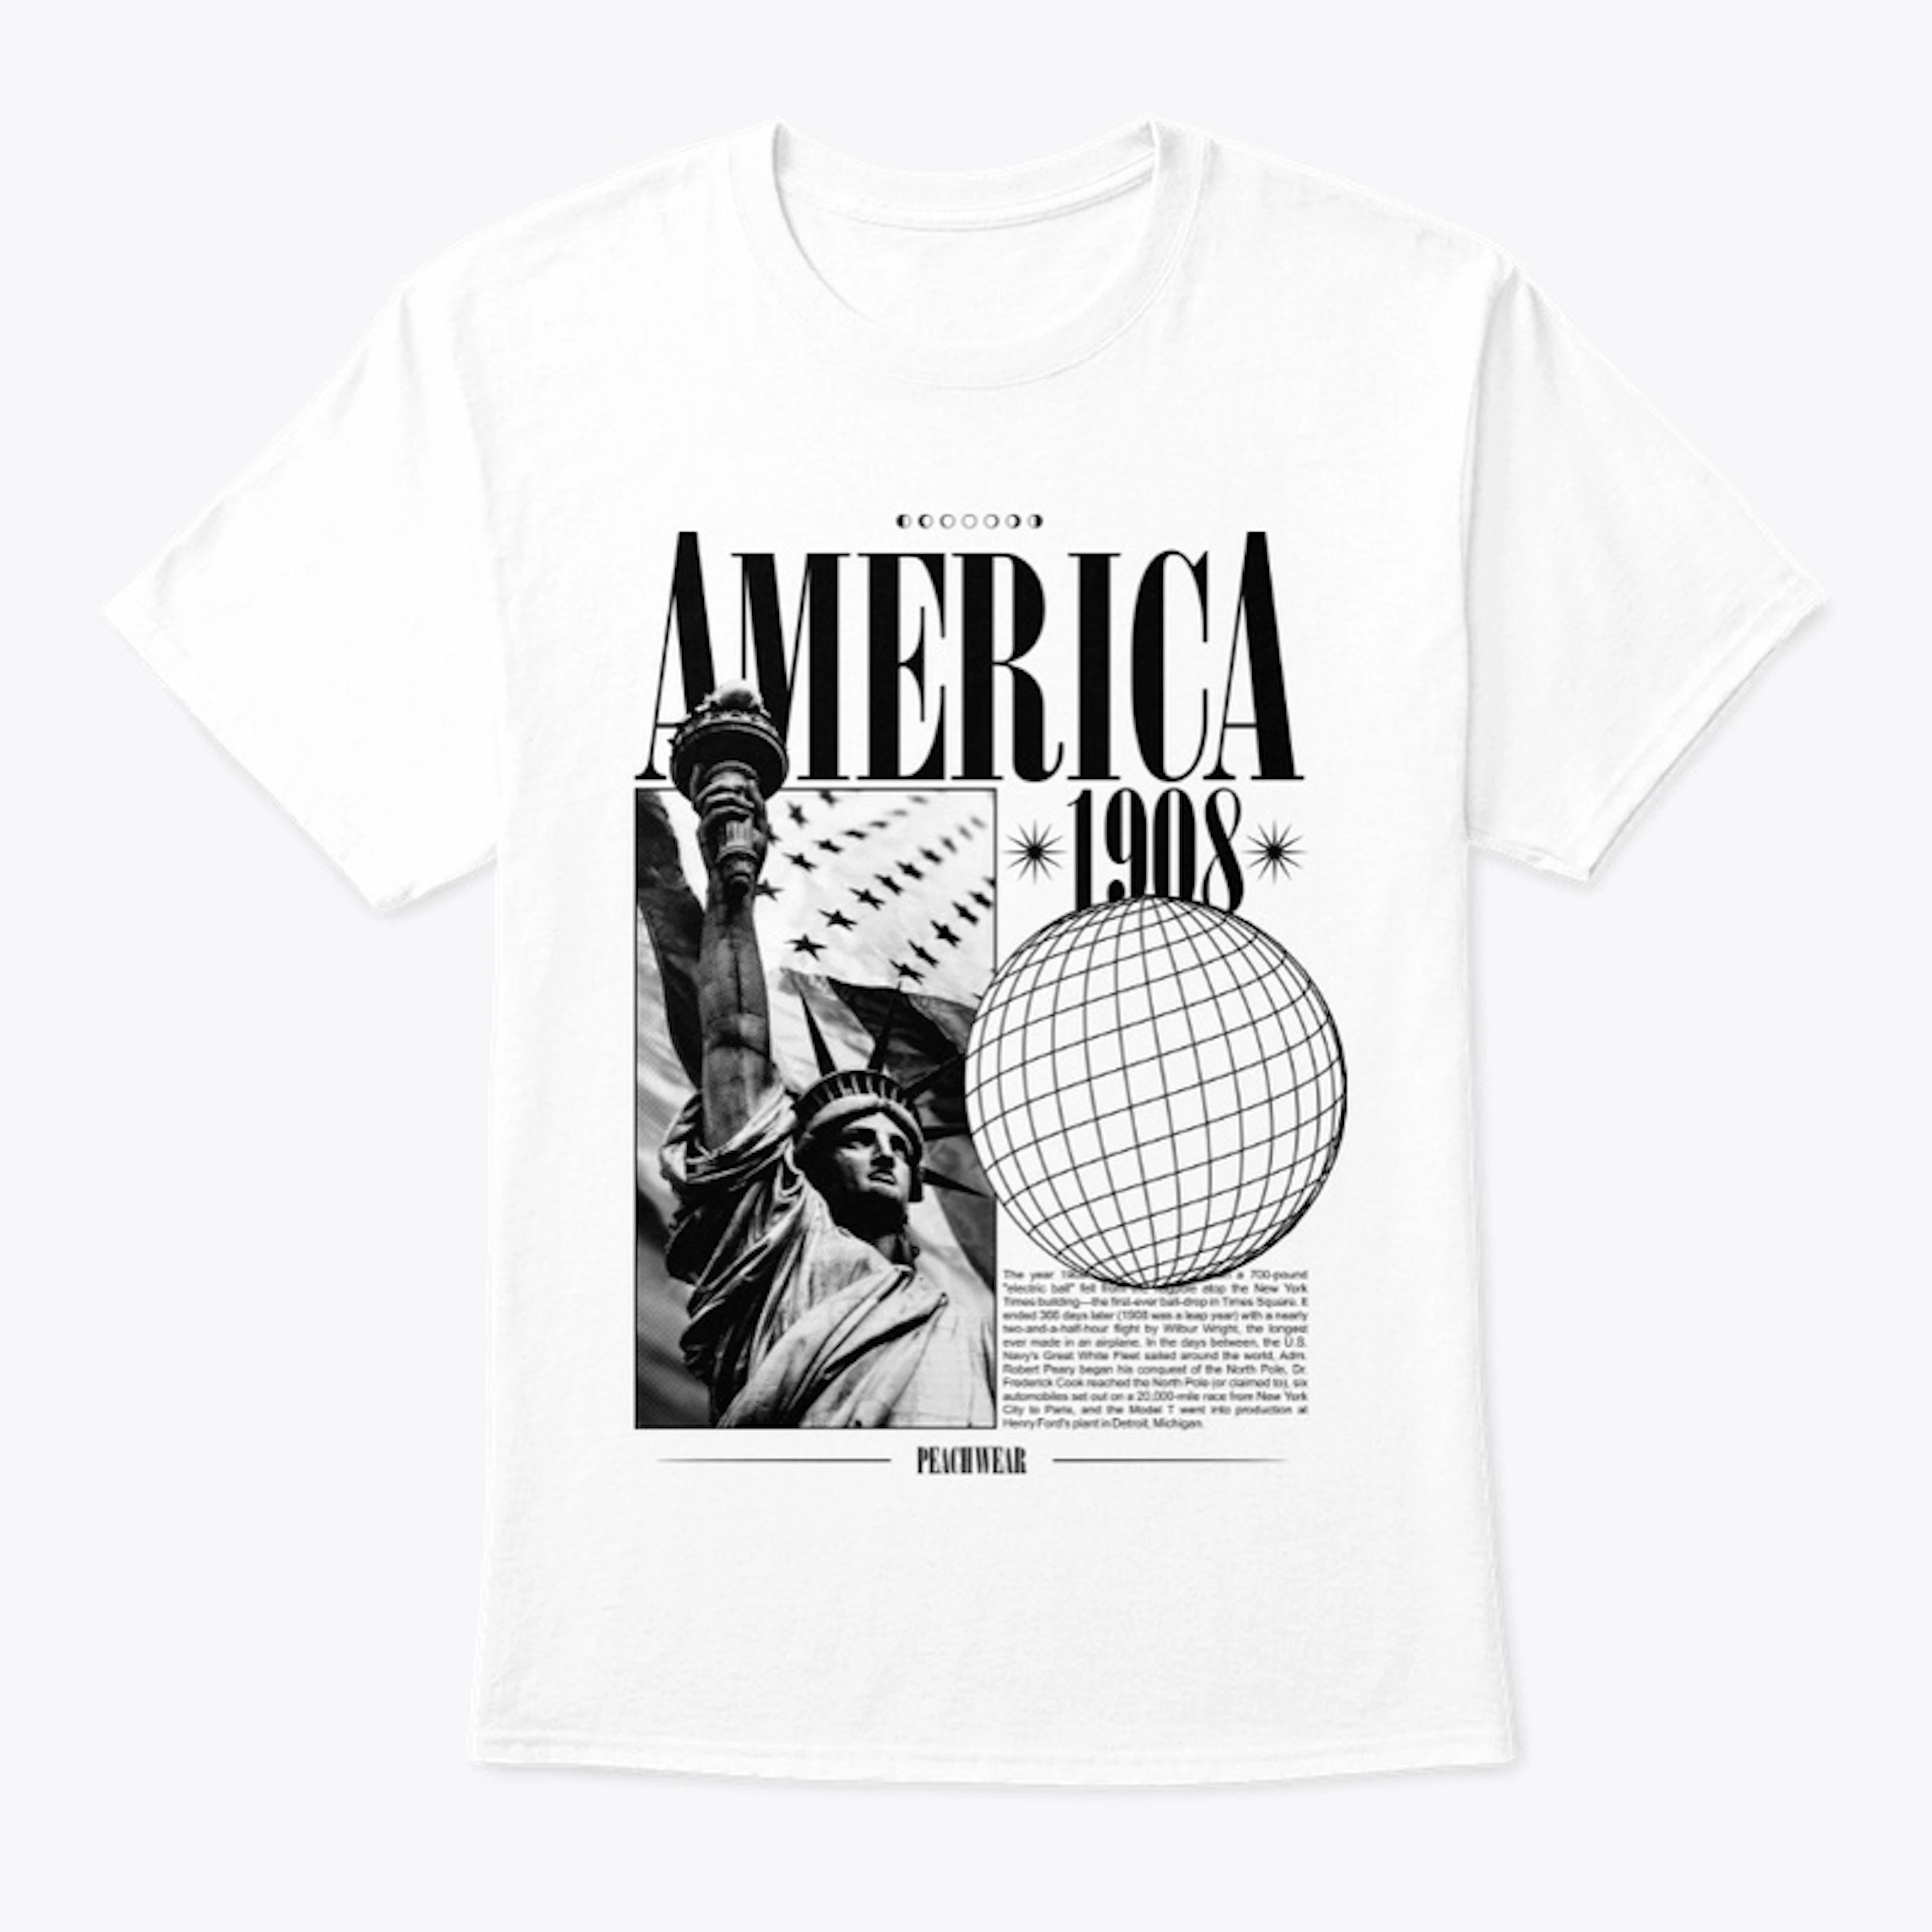 America version 3 (white)